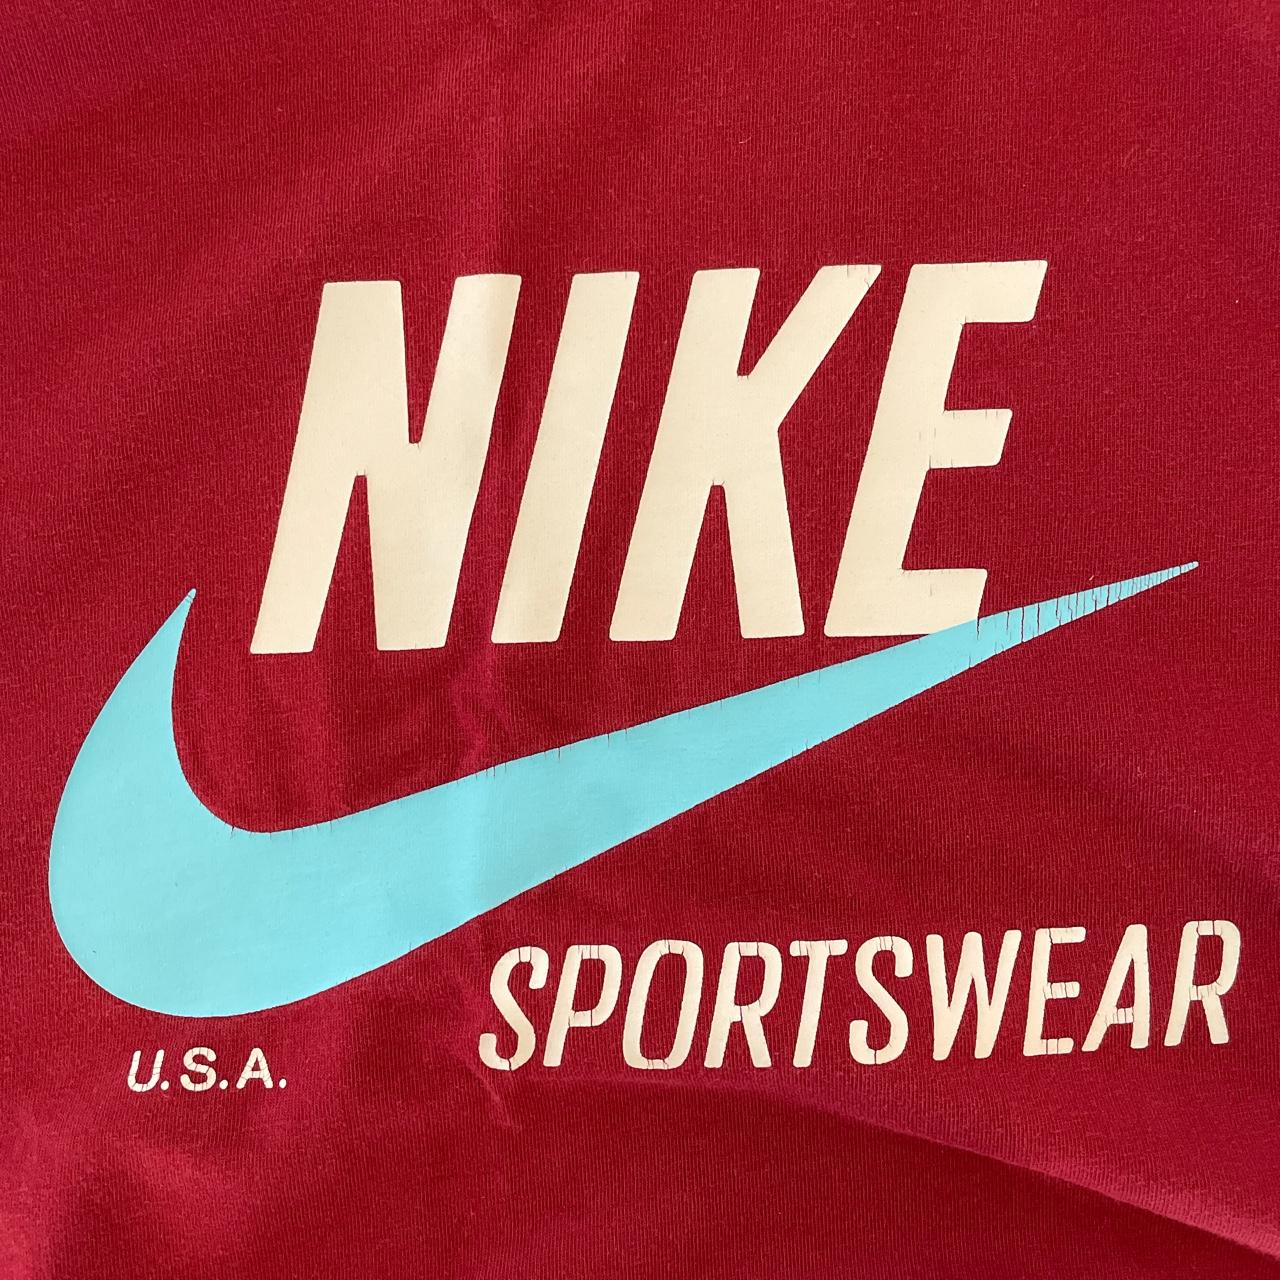 Nike Sportswear 90s t shirt from Japan (made in... - Depop